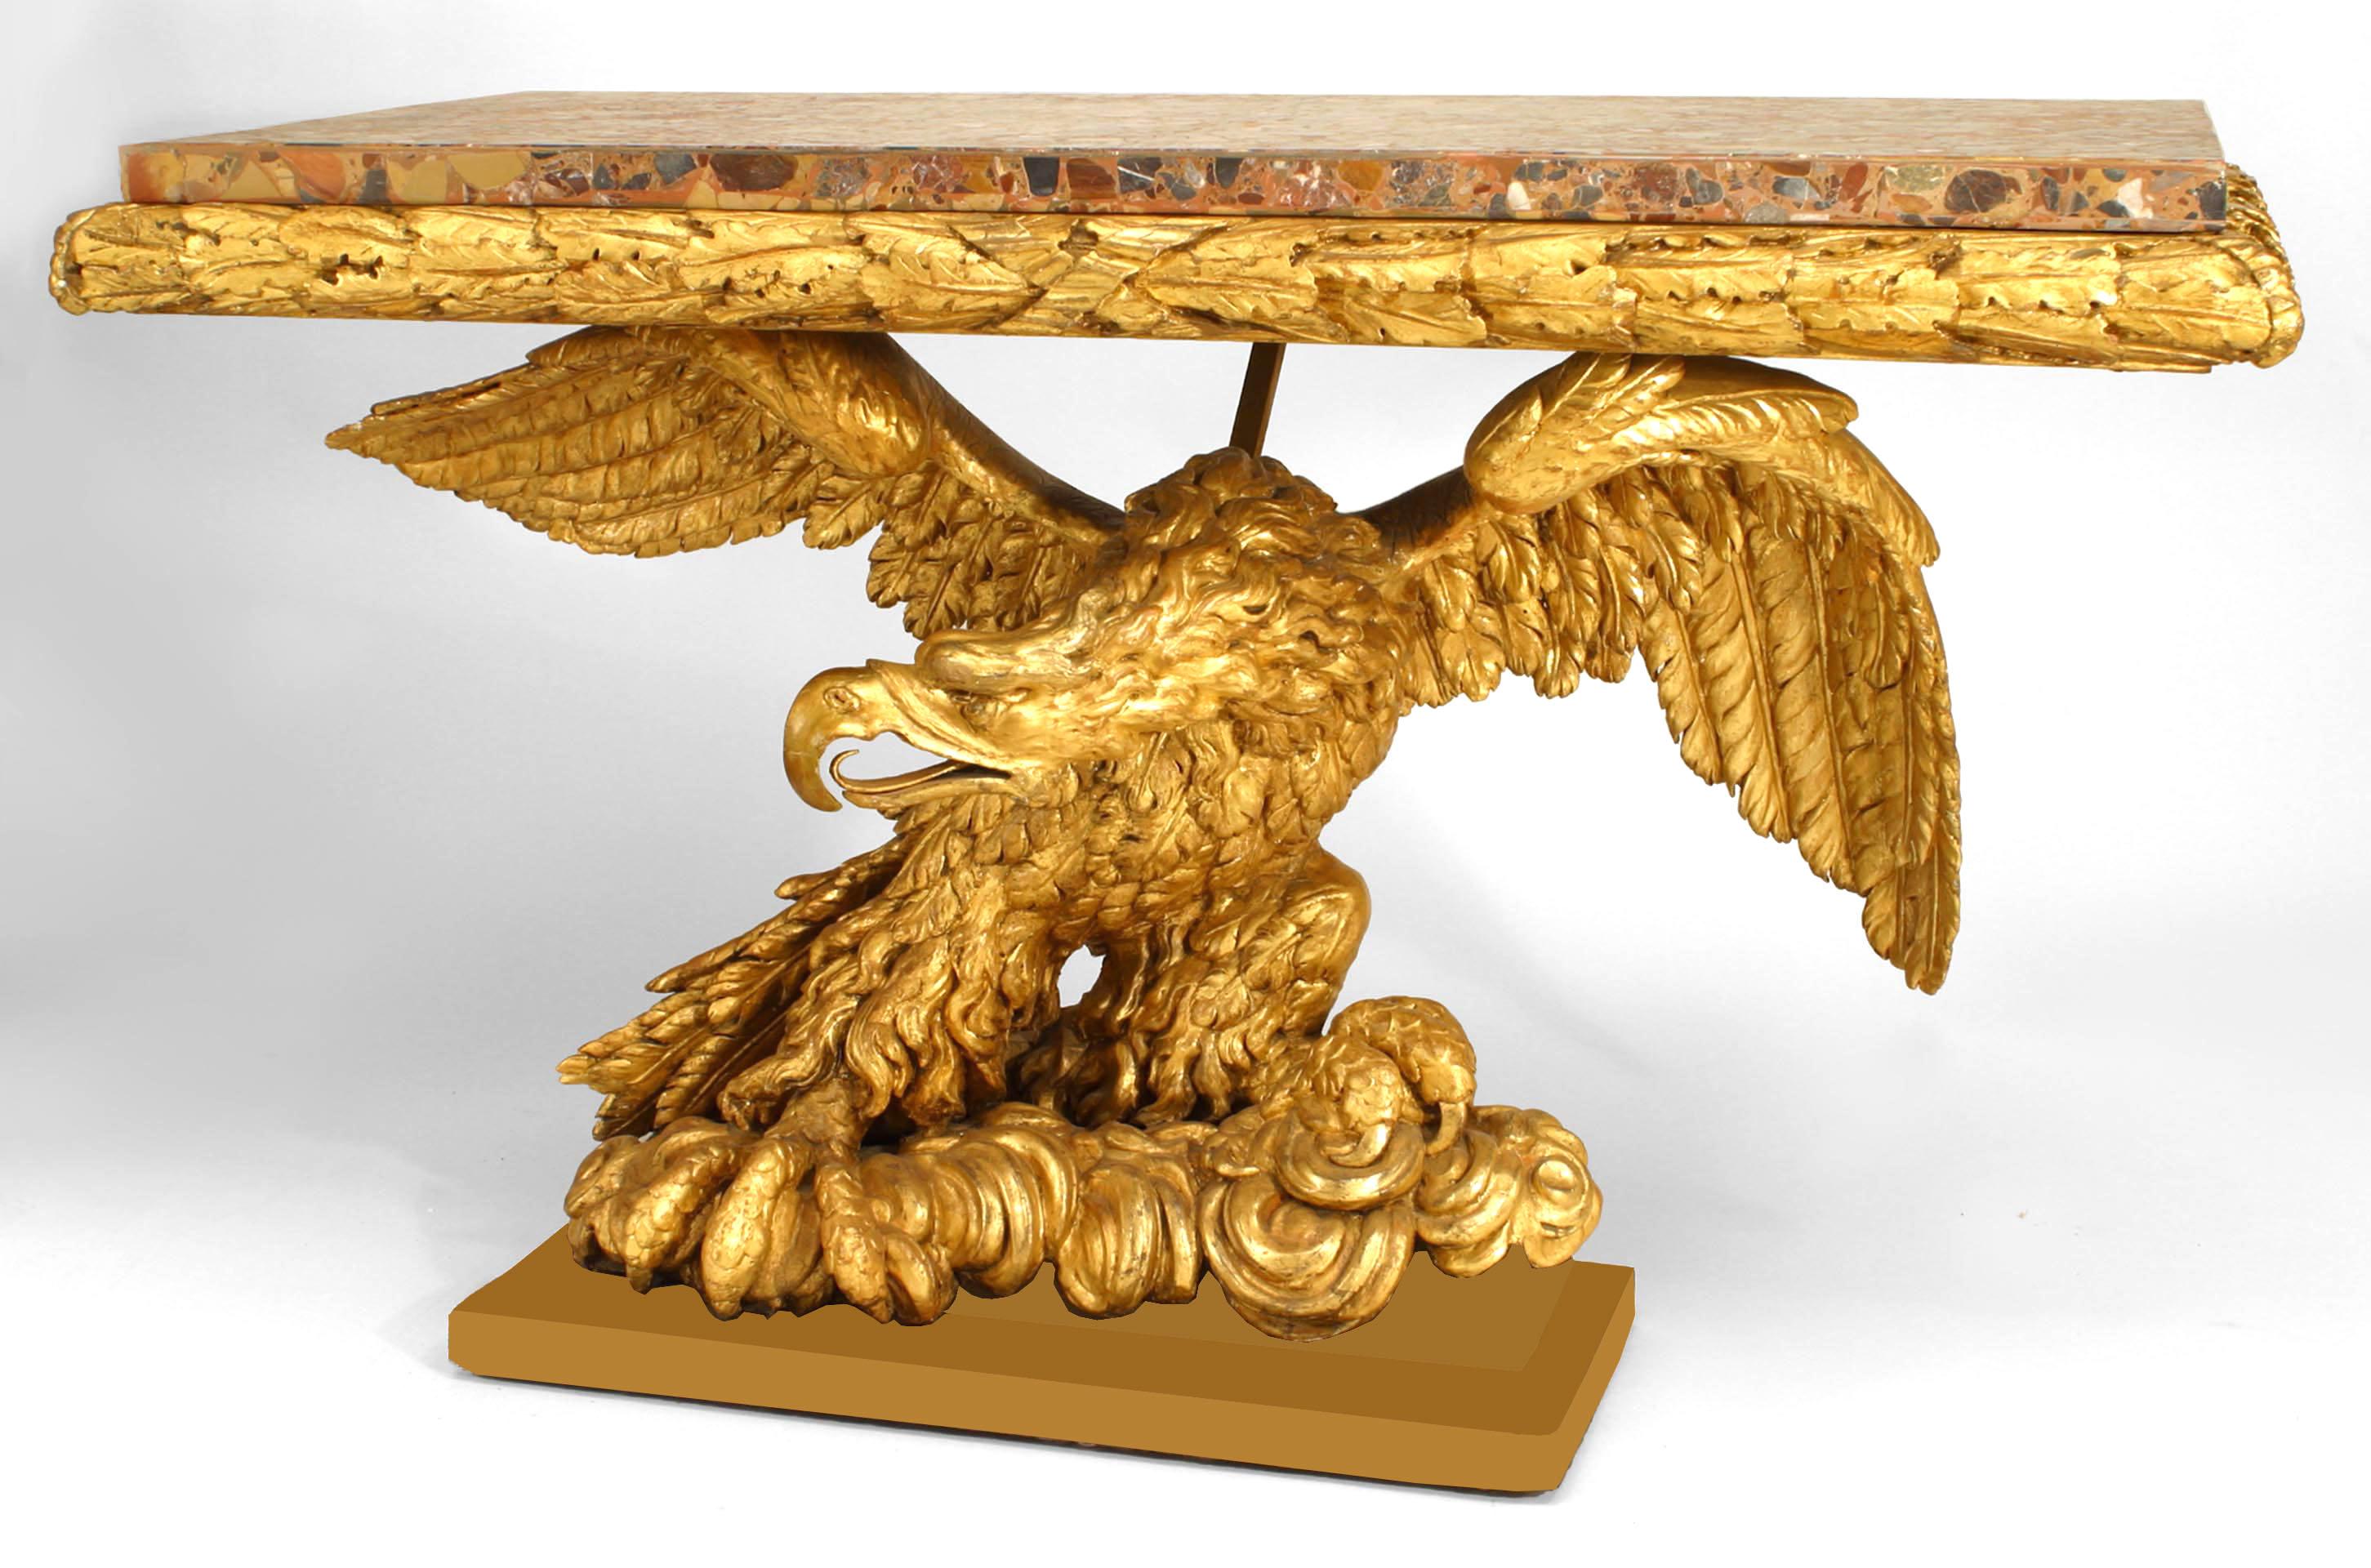 Italienischer Empire-Konsolentisch aus dem späten 18. und frühen 19. Jahrhundert mit einer Platte aus buntem Marmor und vergoldeten Akanthusblättern auf einem vergoldeten, geschnitzten Sockel, der einen Adler mit ausgebreiteten Flügeln darstellt,